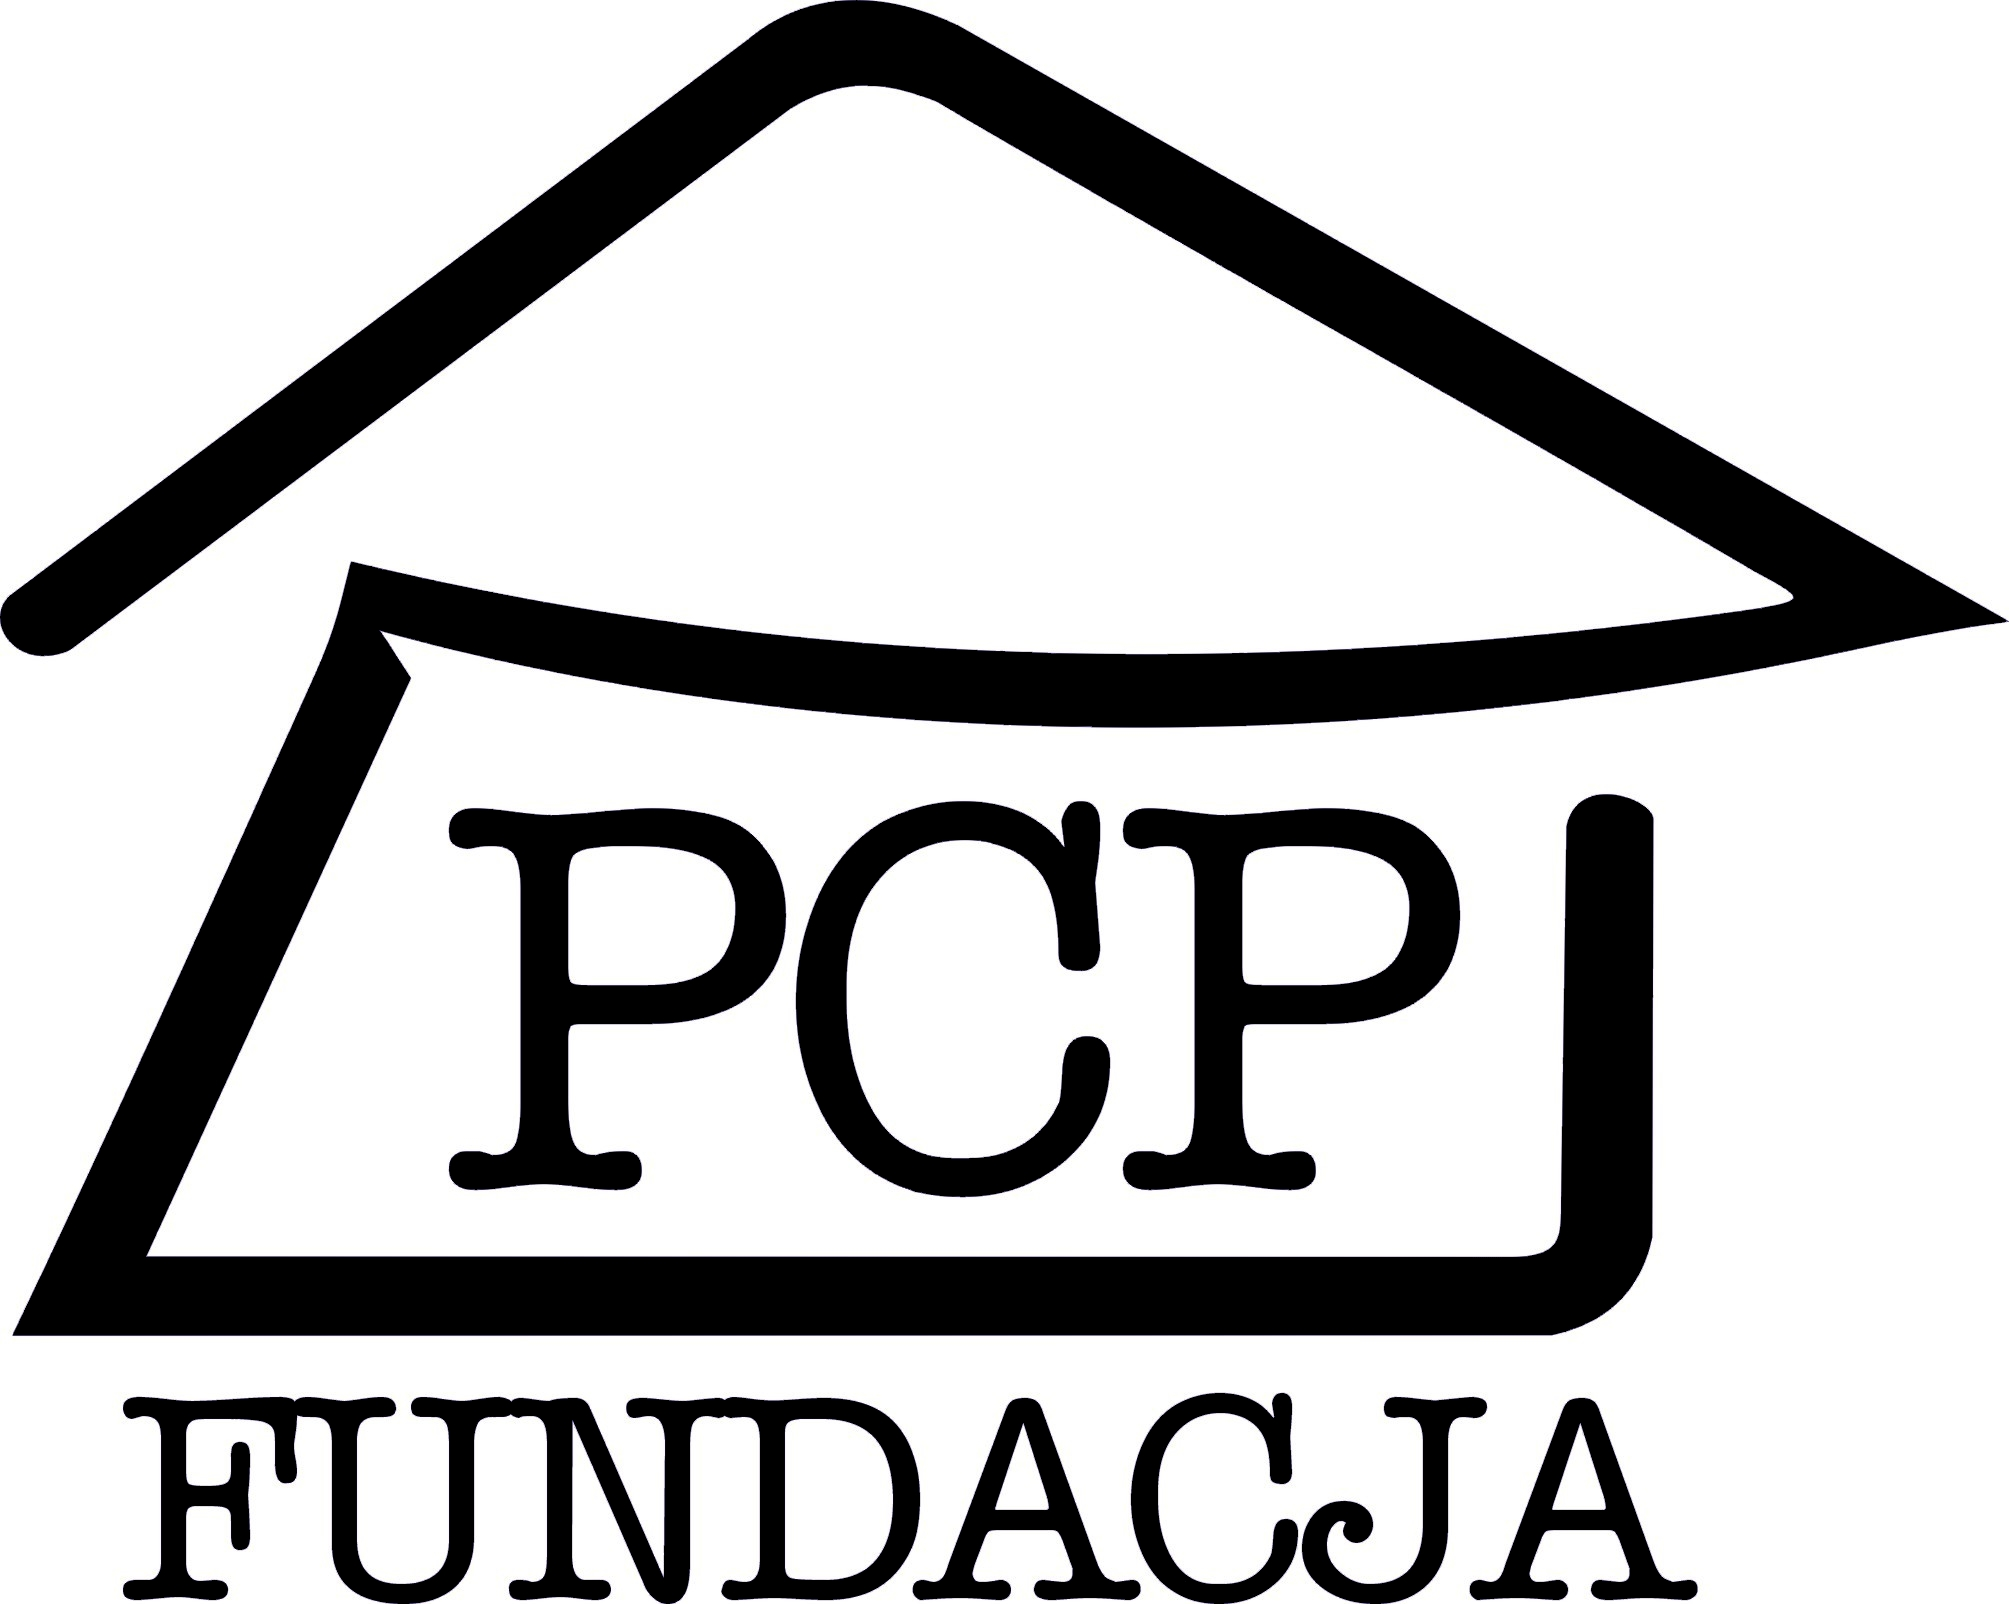 Identyfikator: FPCP/10/11 Puławy, dnia 31.05.2011r.